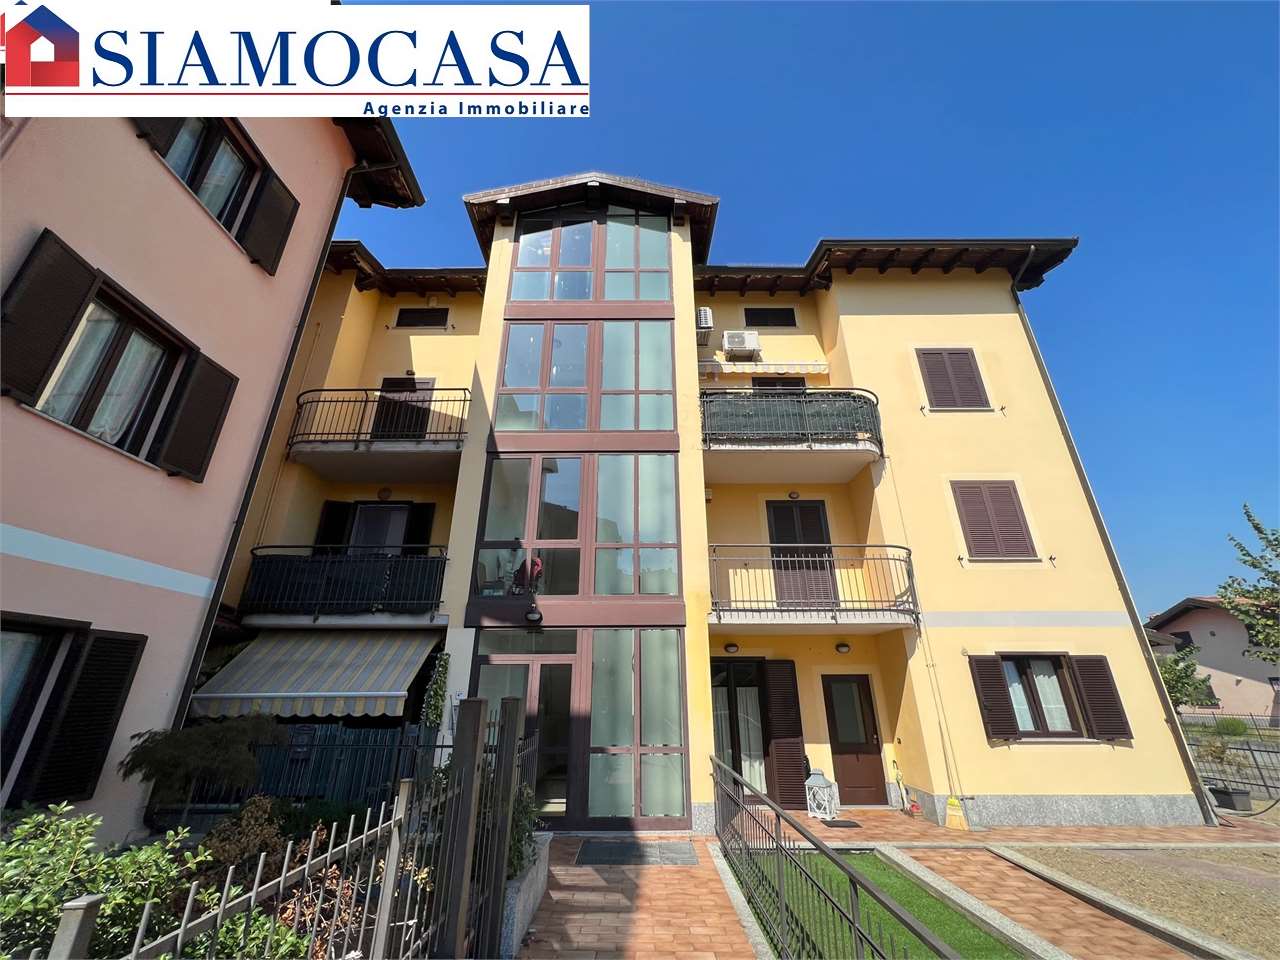 Appartamento in vendita a Serravalle Scrivia, 2 locali, prezzo € 79.000 | CambioCasa.it